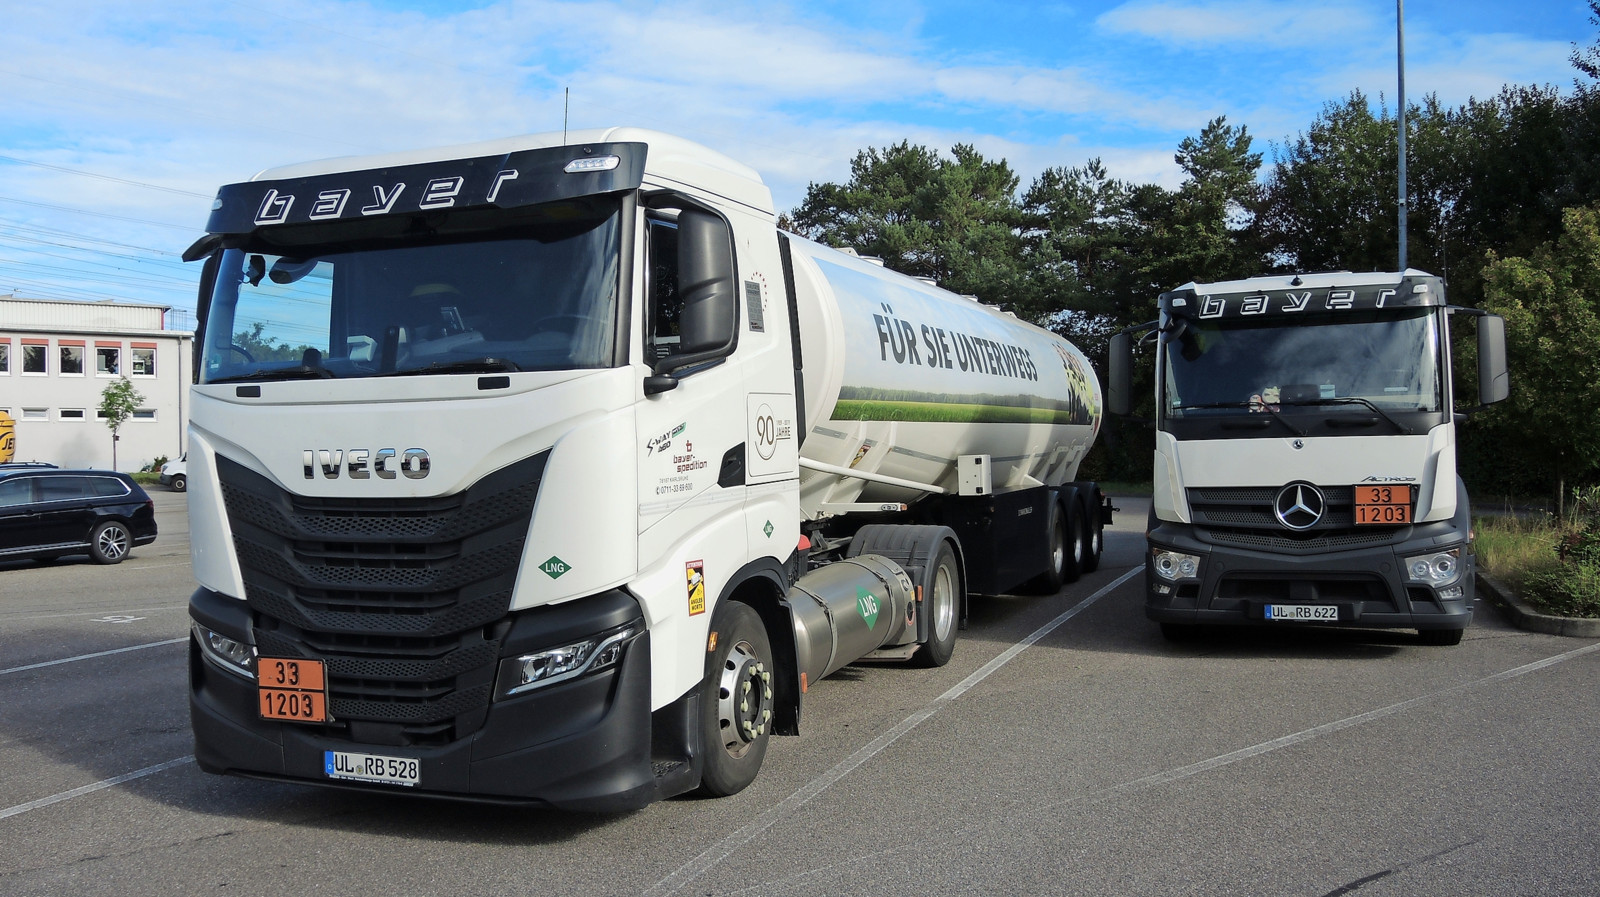 Mit 120 Tankzügen versorgt die Spedition Bayer ihre Kunden in mehreren Bundesländern.